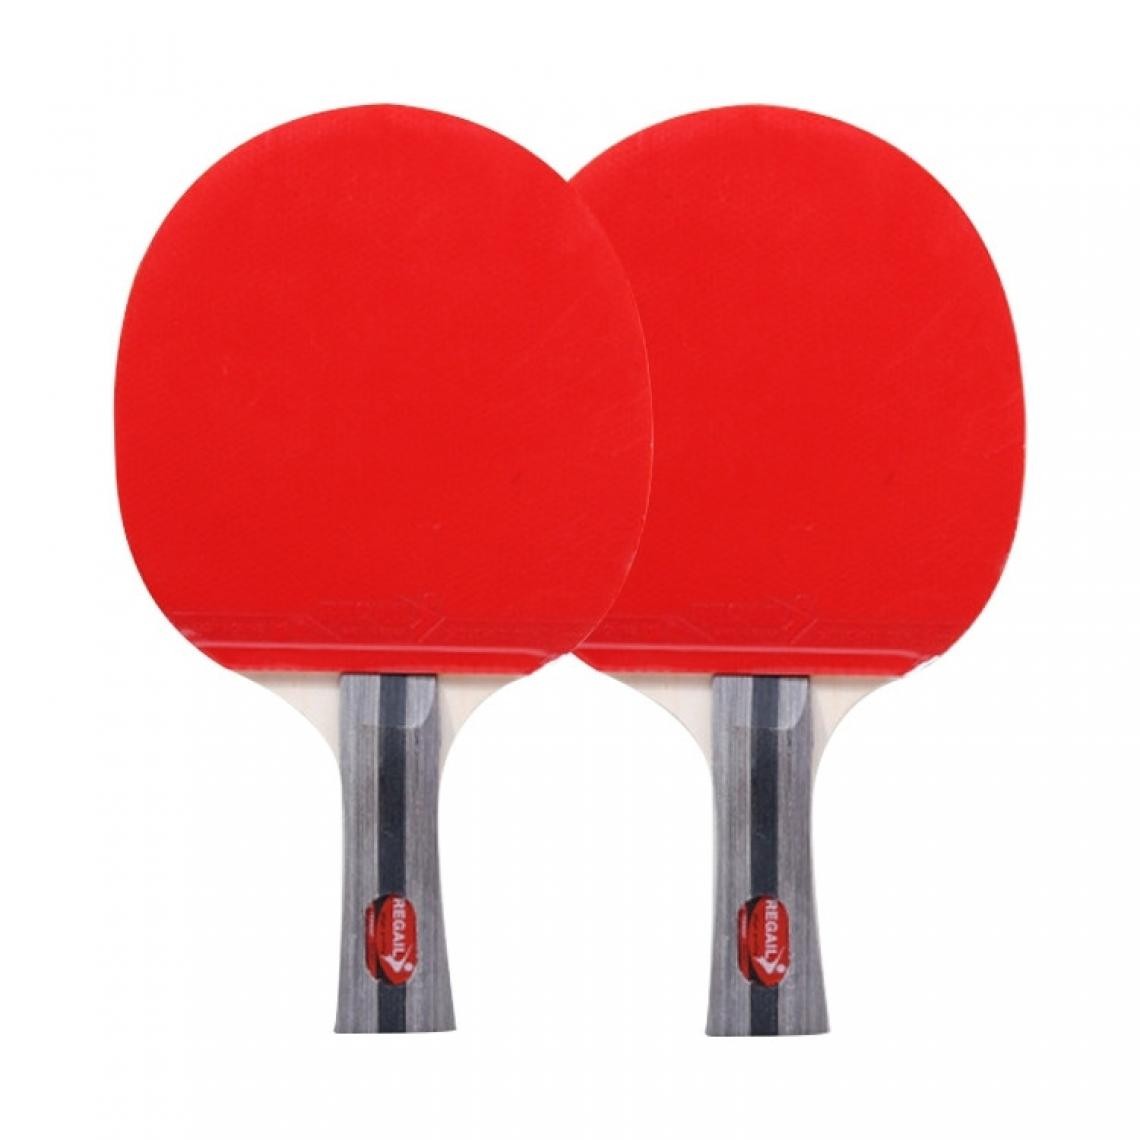 Wewoo - REGAIL 8020 2 en 1 Poignée Longue Shakehand Ping Pong Raquette + Ball Set pour la Formation - Jeux de balles